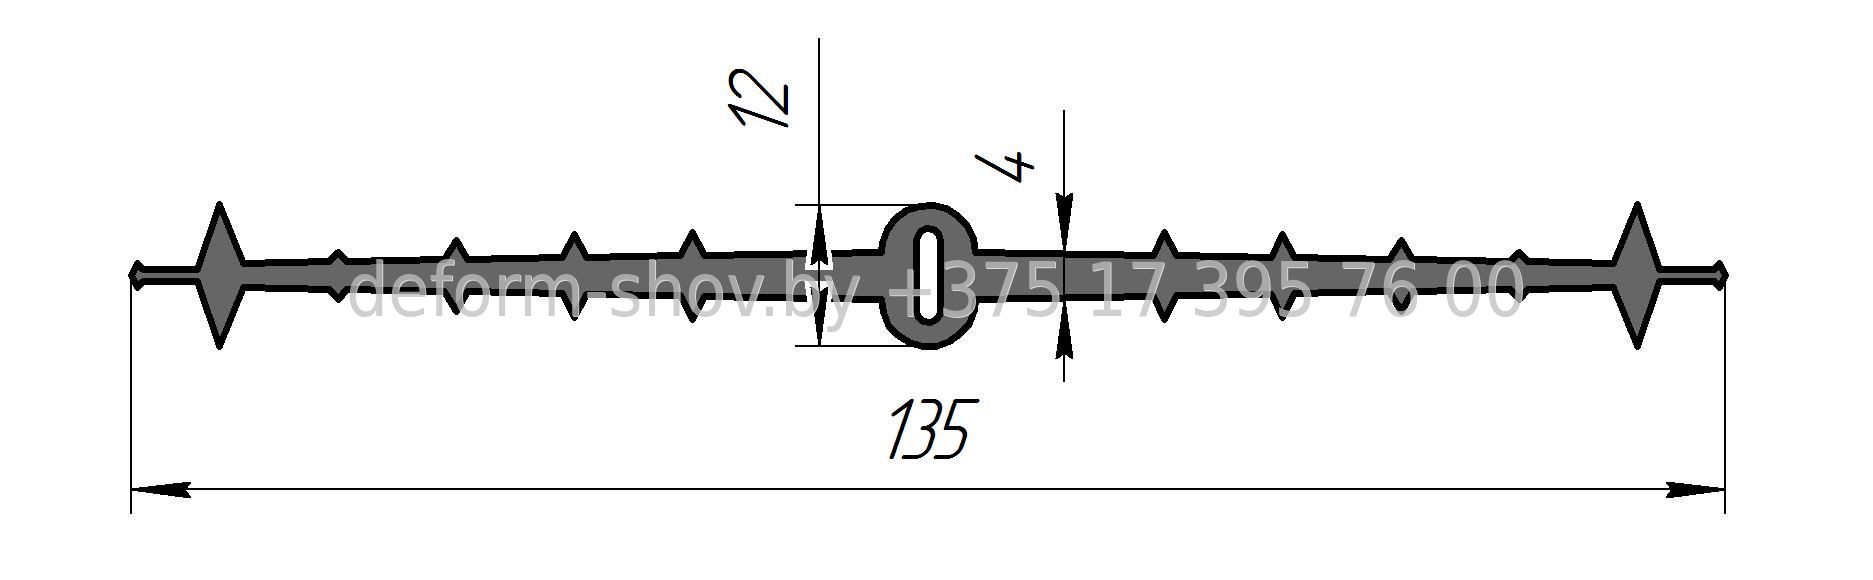 Гидрошпонка ЦДР-135К15, Резина, ширина 135мм, шов 15мм